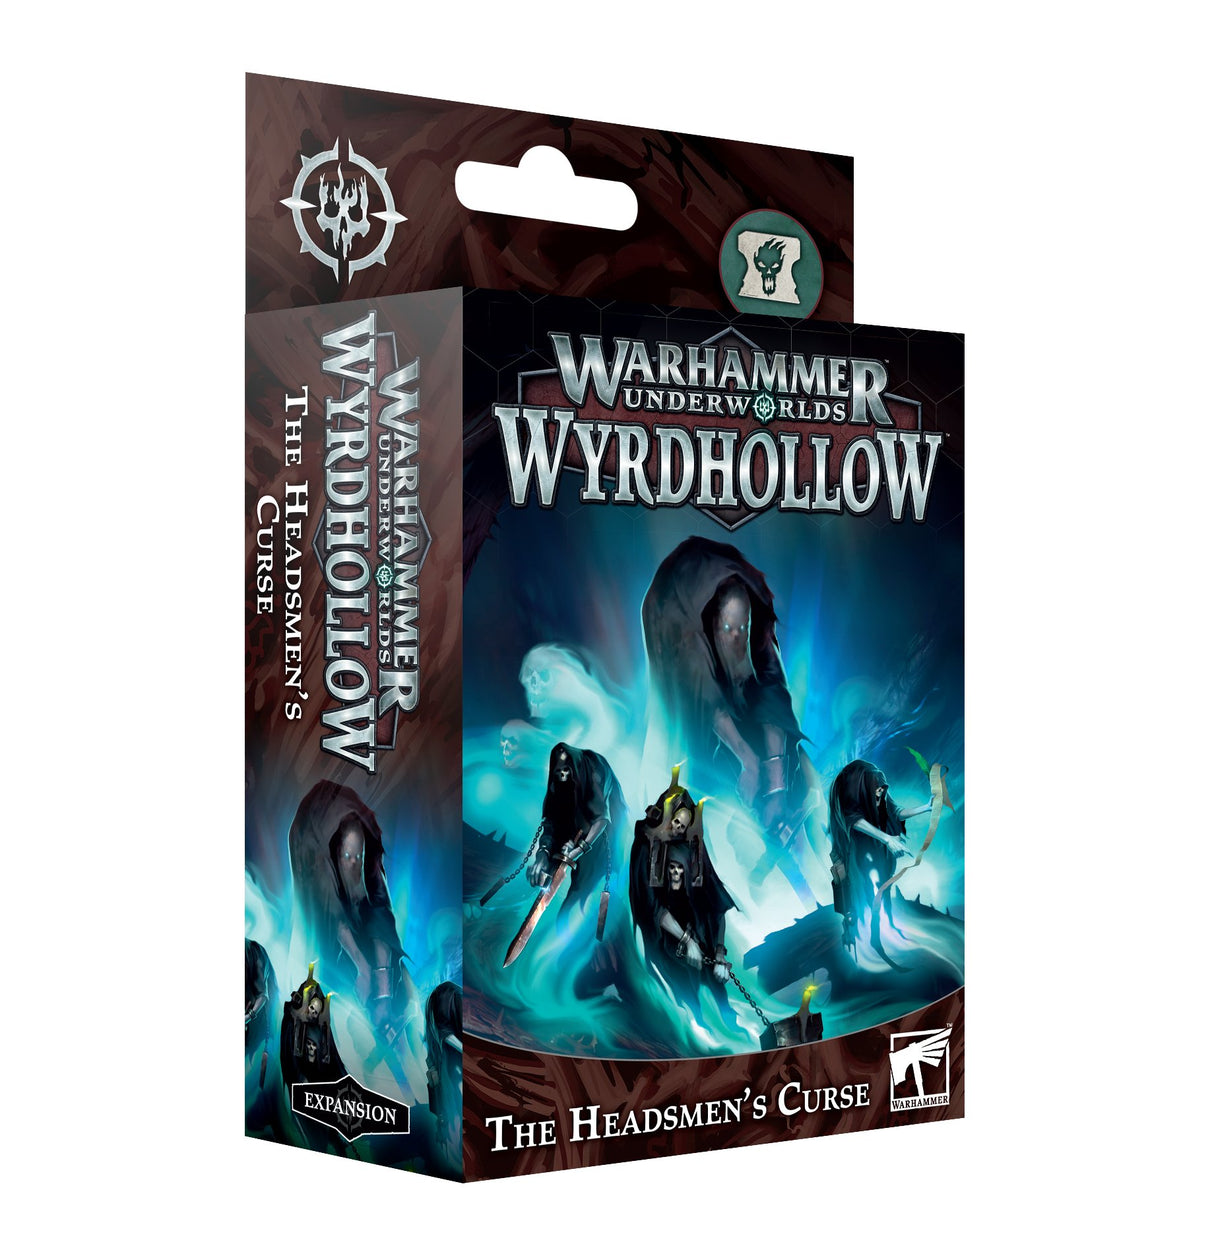 Warhammer Underworlds: Wyrdhollow â€“ The Headsmen's Curse